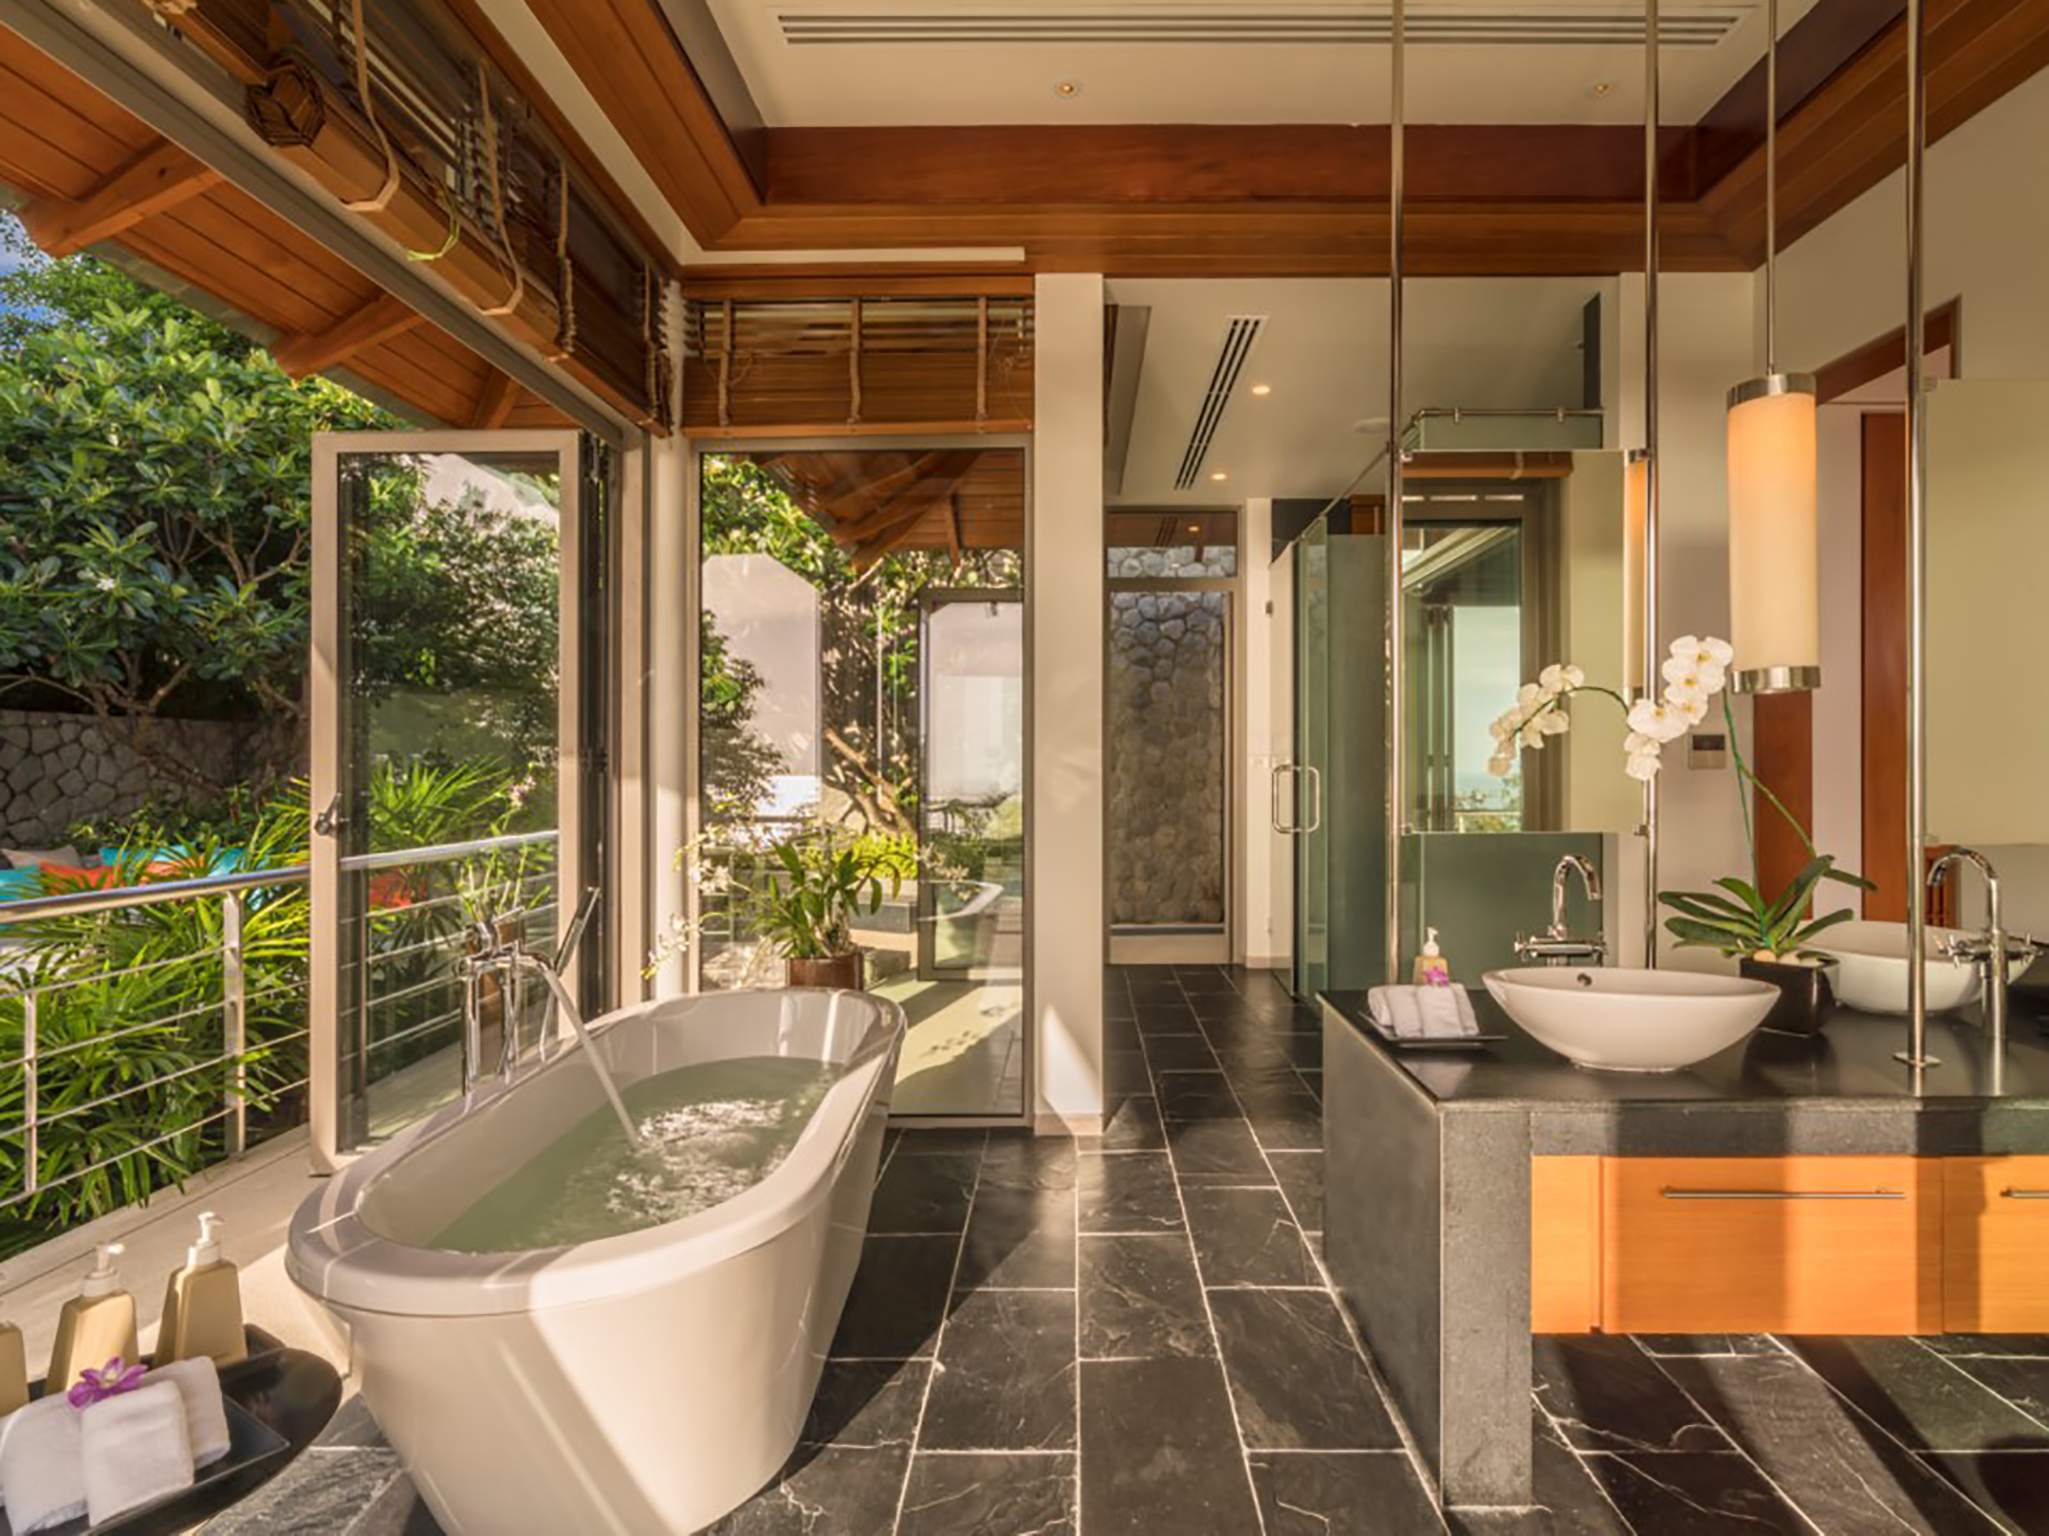 Rent villa Baan Paa Talee, Thailand, Phuket, Kamala | Villacarte